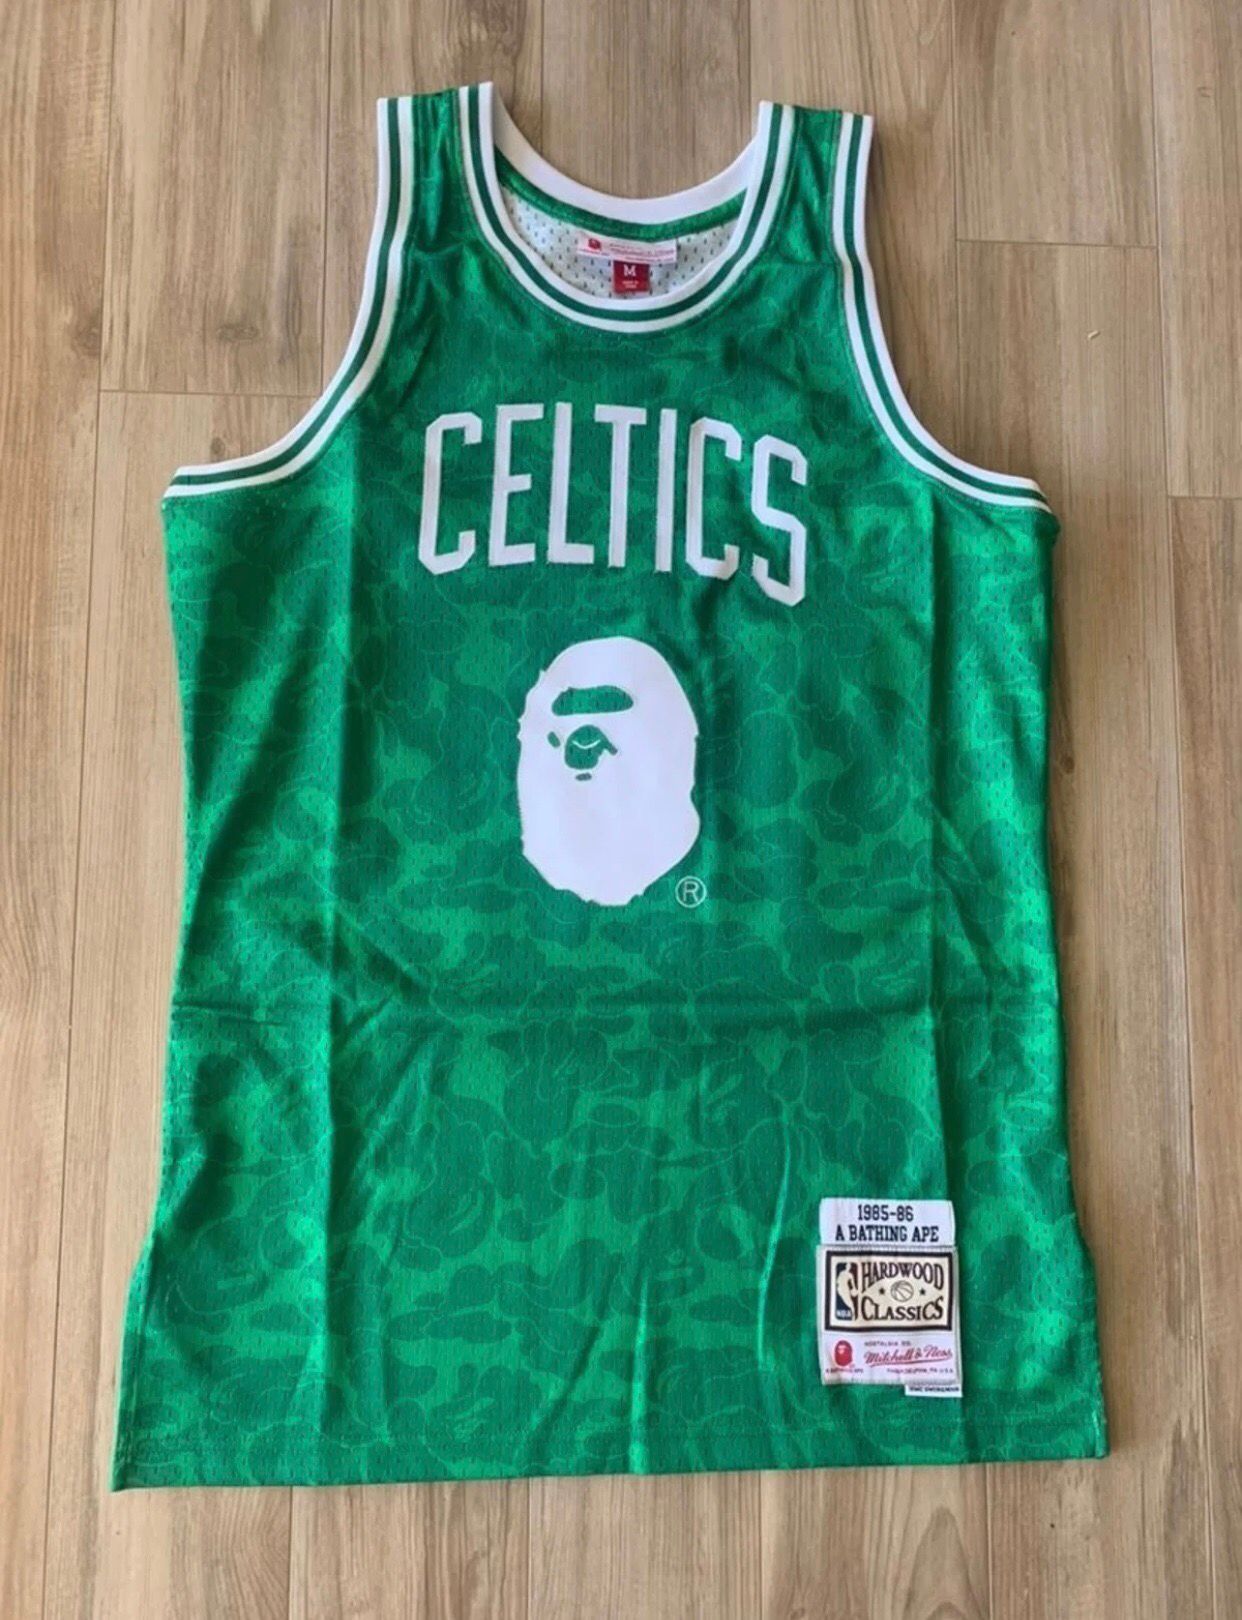 Bape, Shirts, Bape X Mitchell Ness Celtics Abc Basketball Swingman Jersey